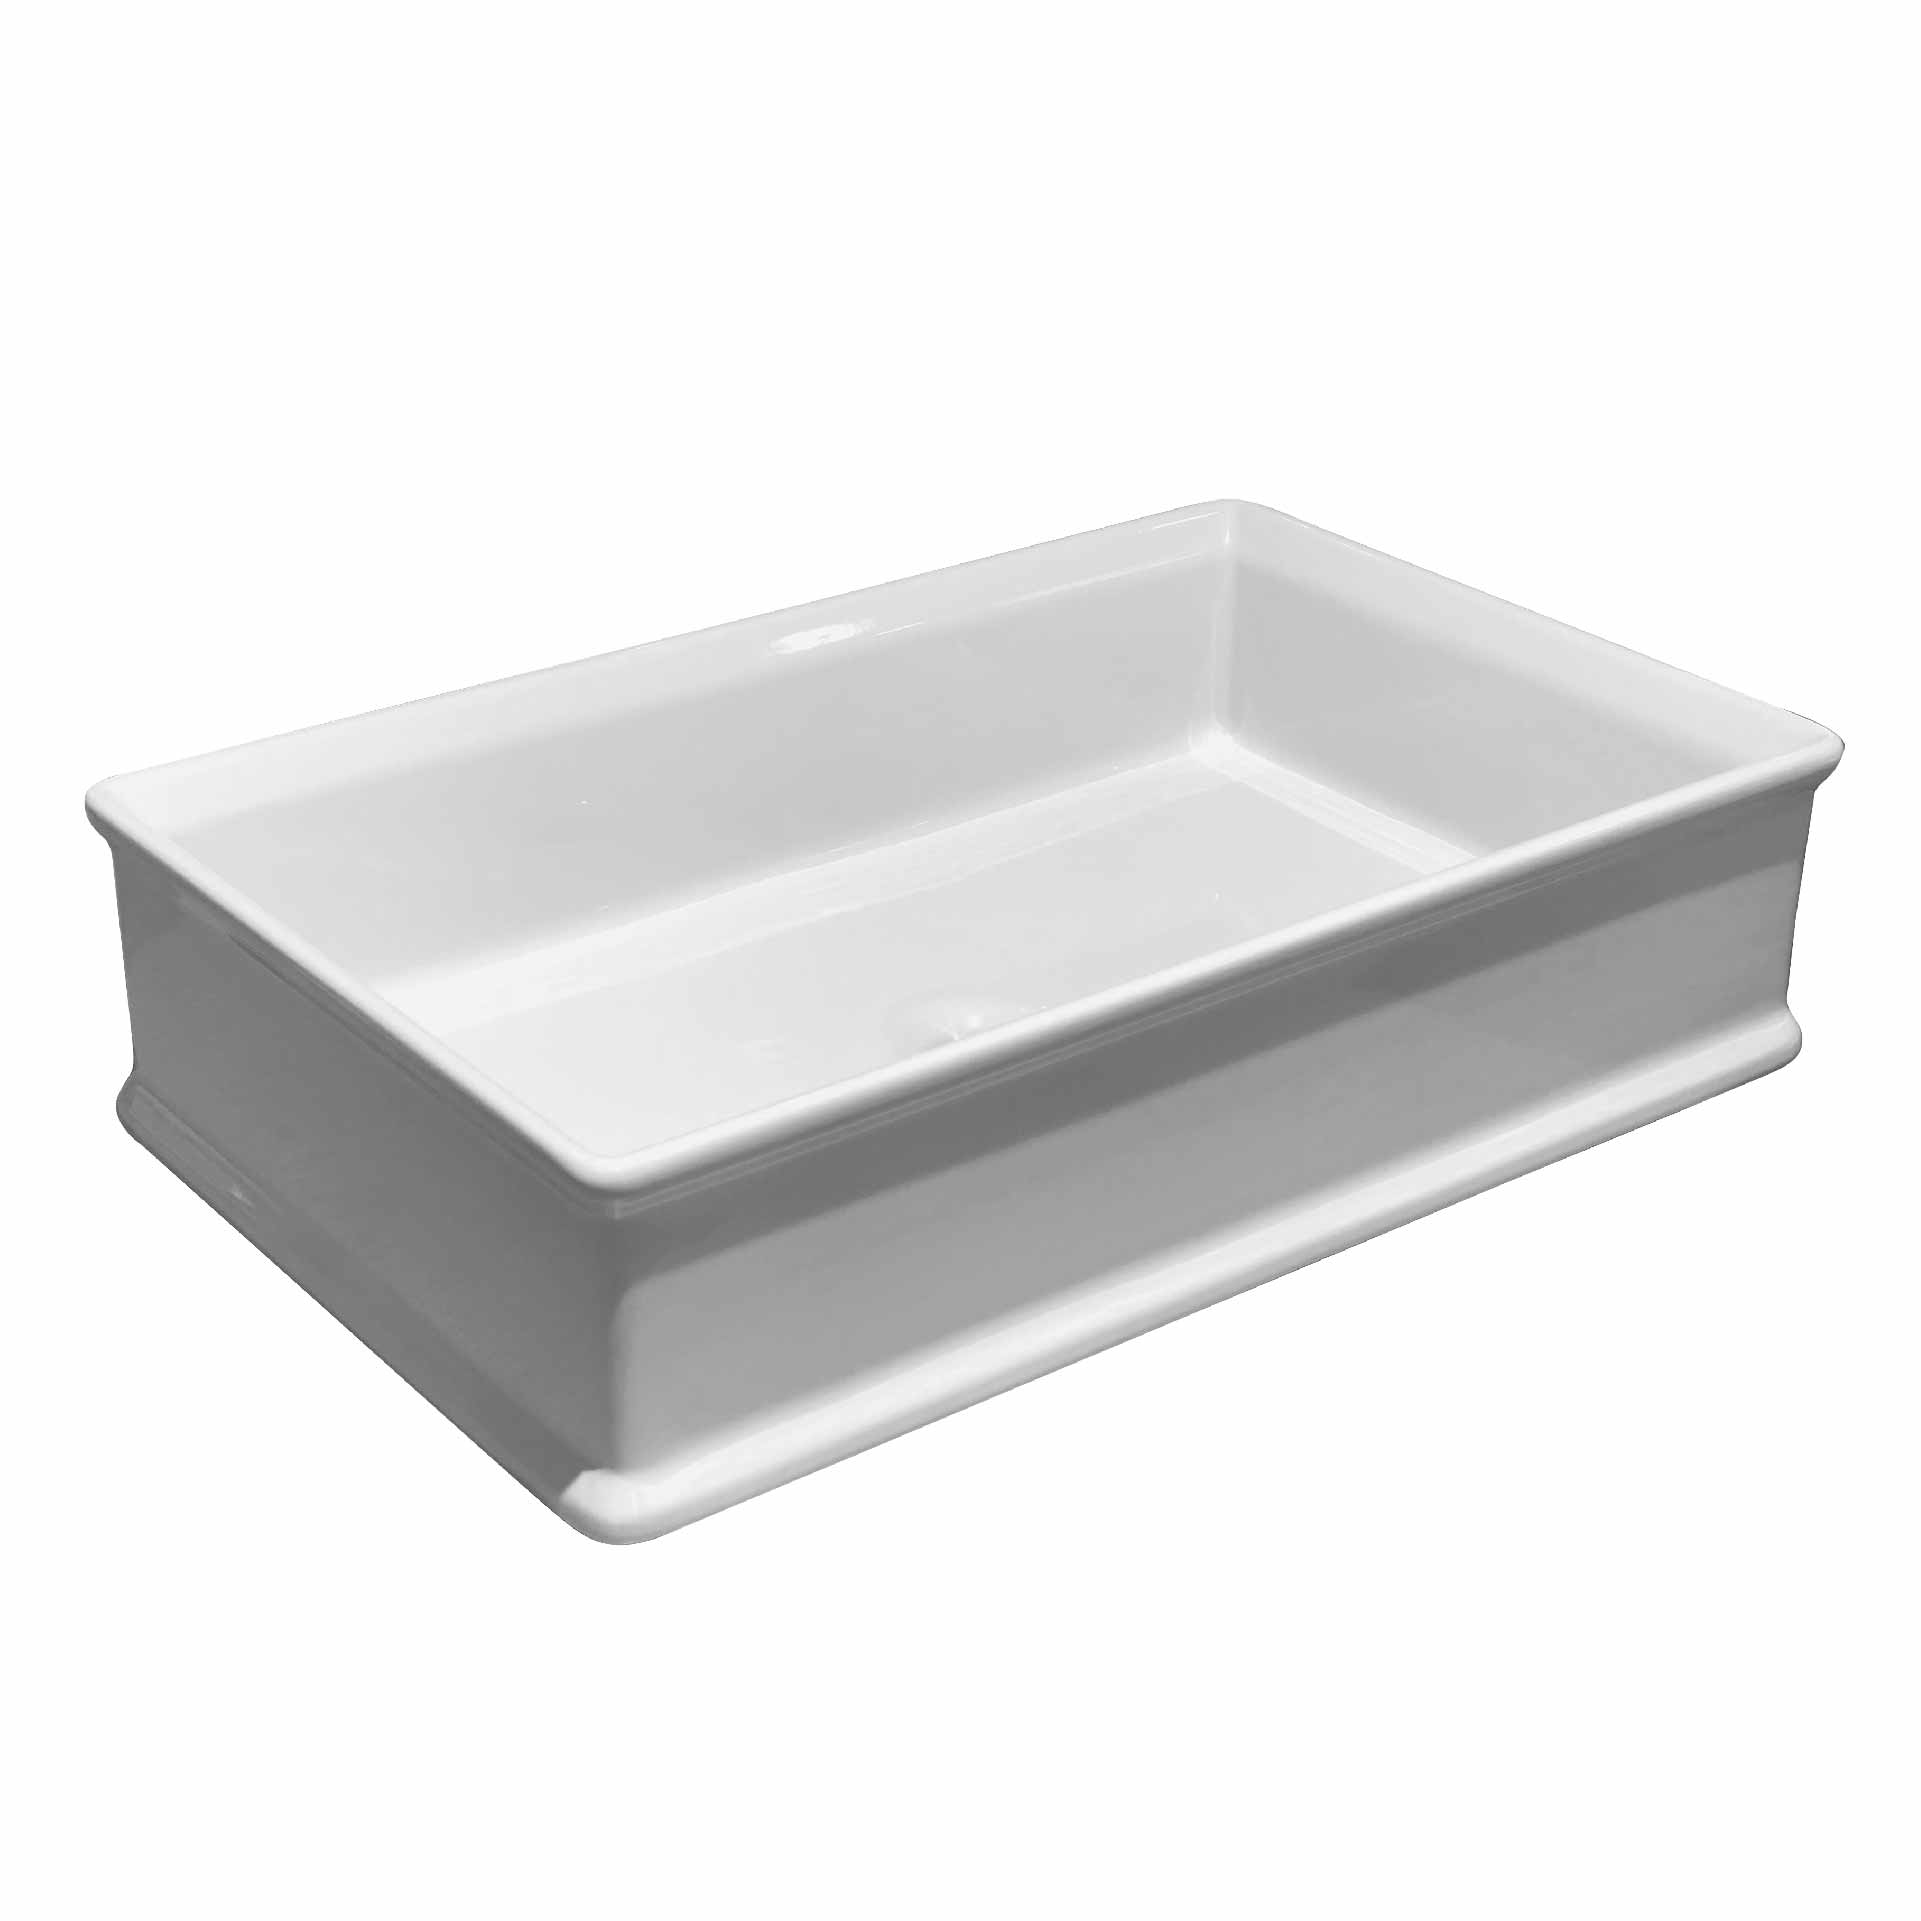 PB00-8B160 Counter top porcelain basin